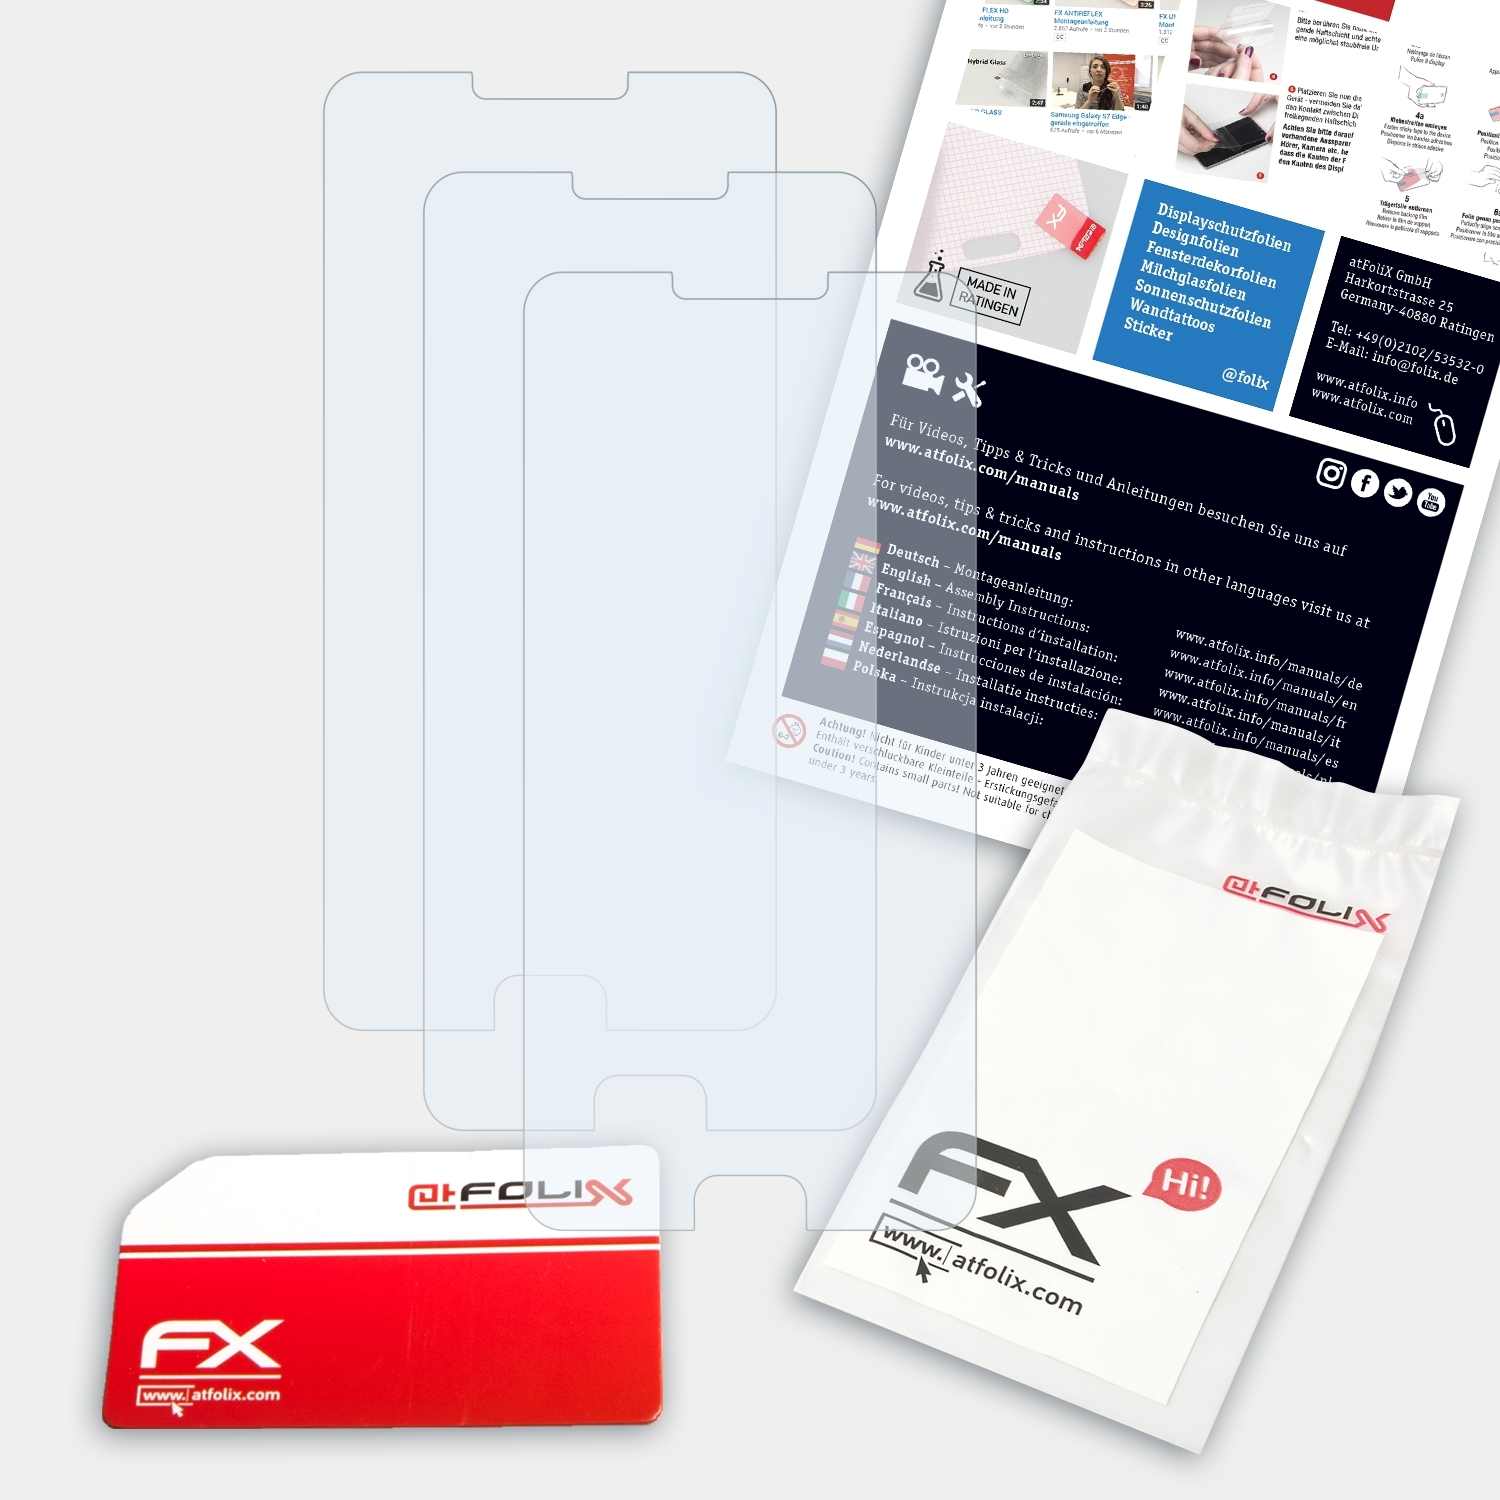 ATFOLIX 3x FX-Clear Displayschutz(für Infinix Note 4)